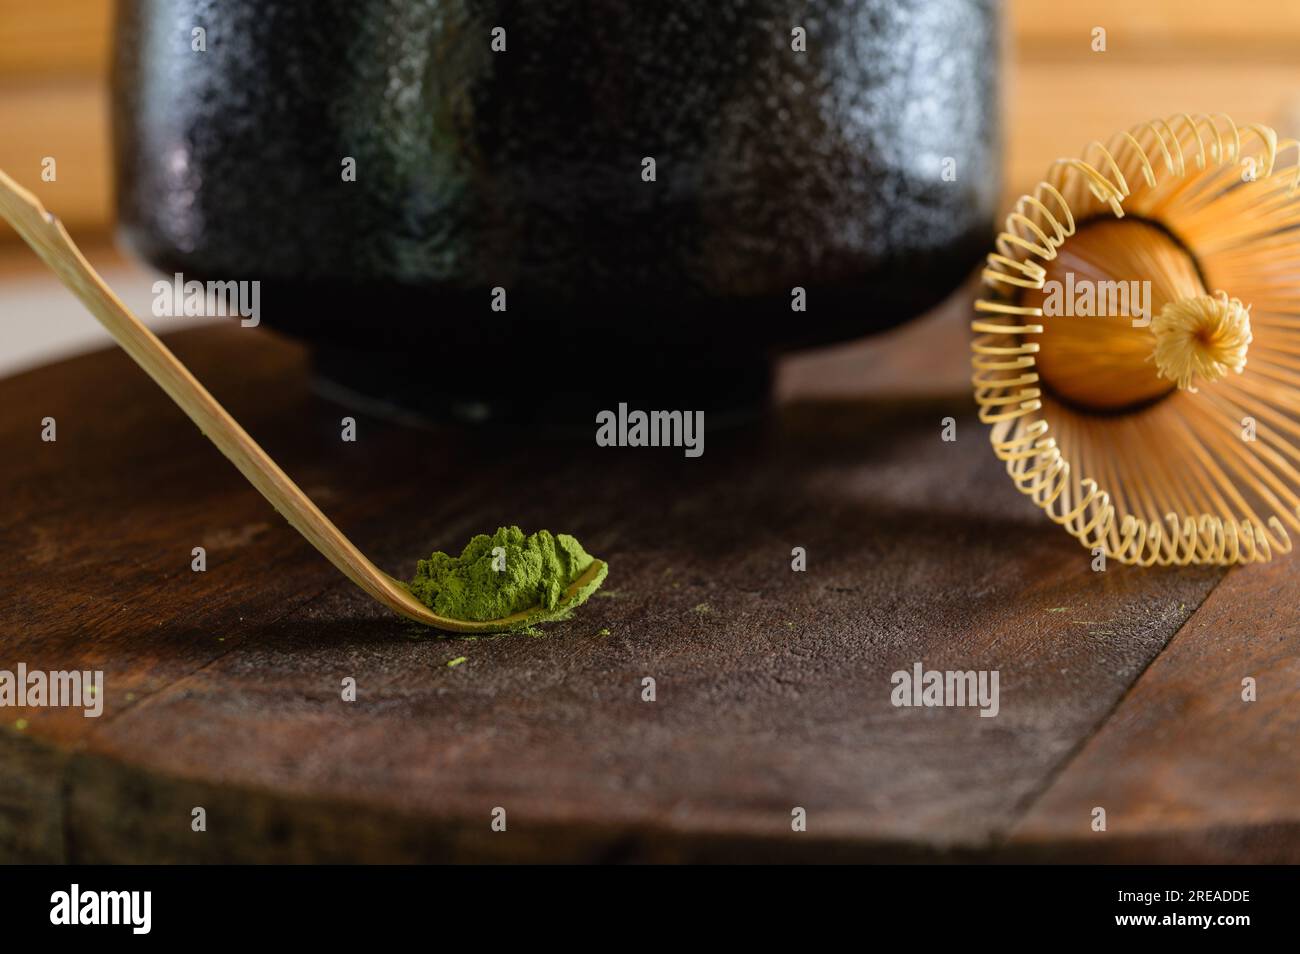 Cuillère en bambou matcha pour préparer du thé japonais. Thé matcha. Thé Matcha japonais. Boisson à base de plantes, boisson saine. Banque D'Images